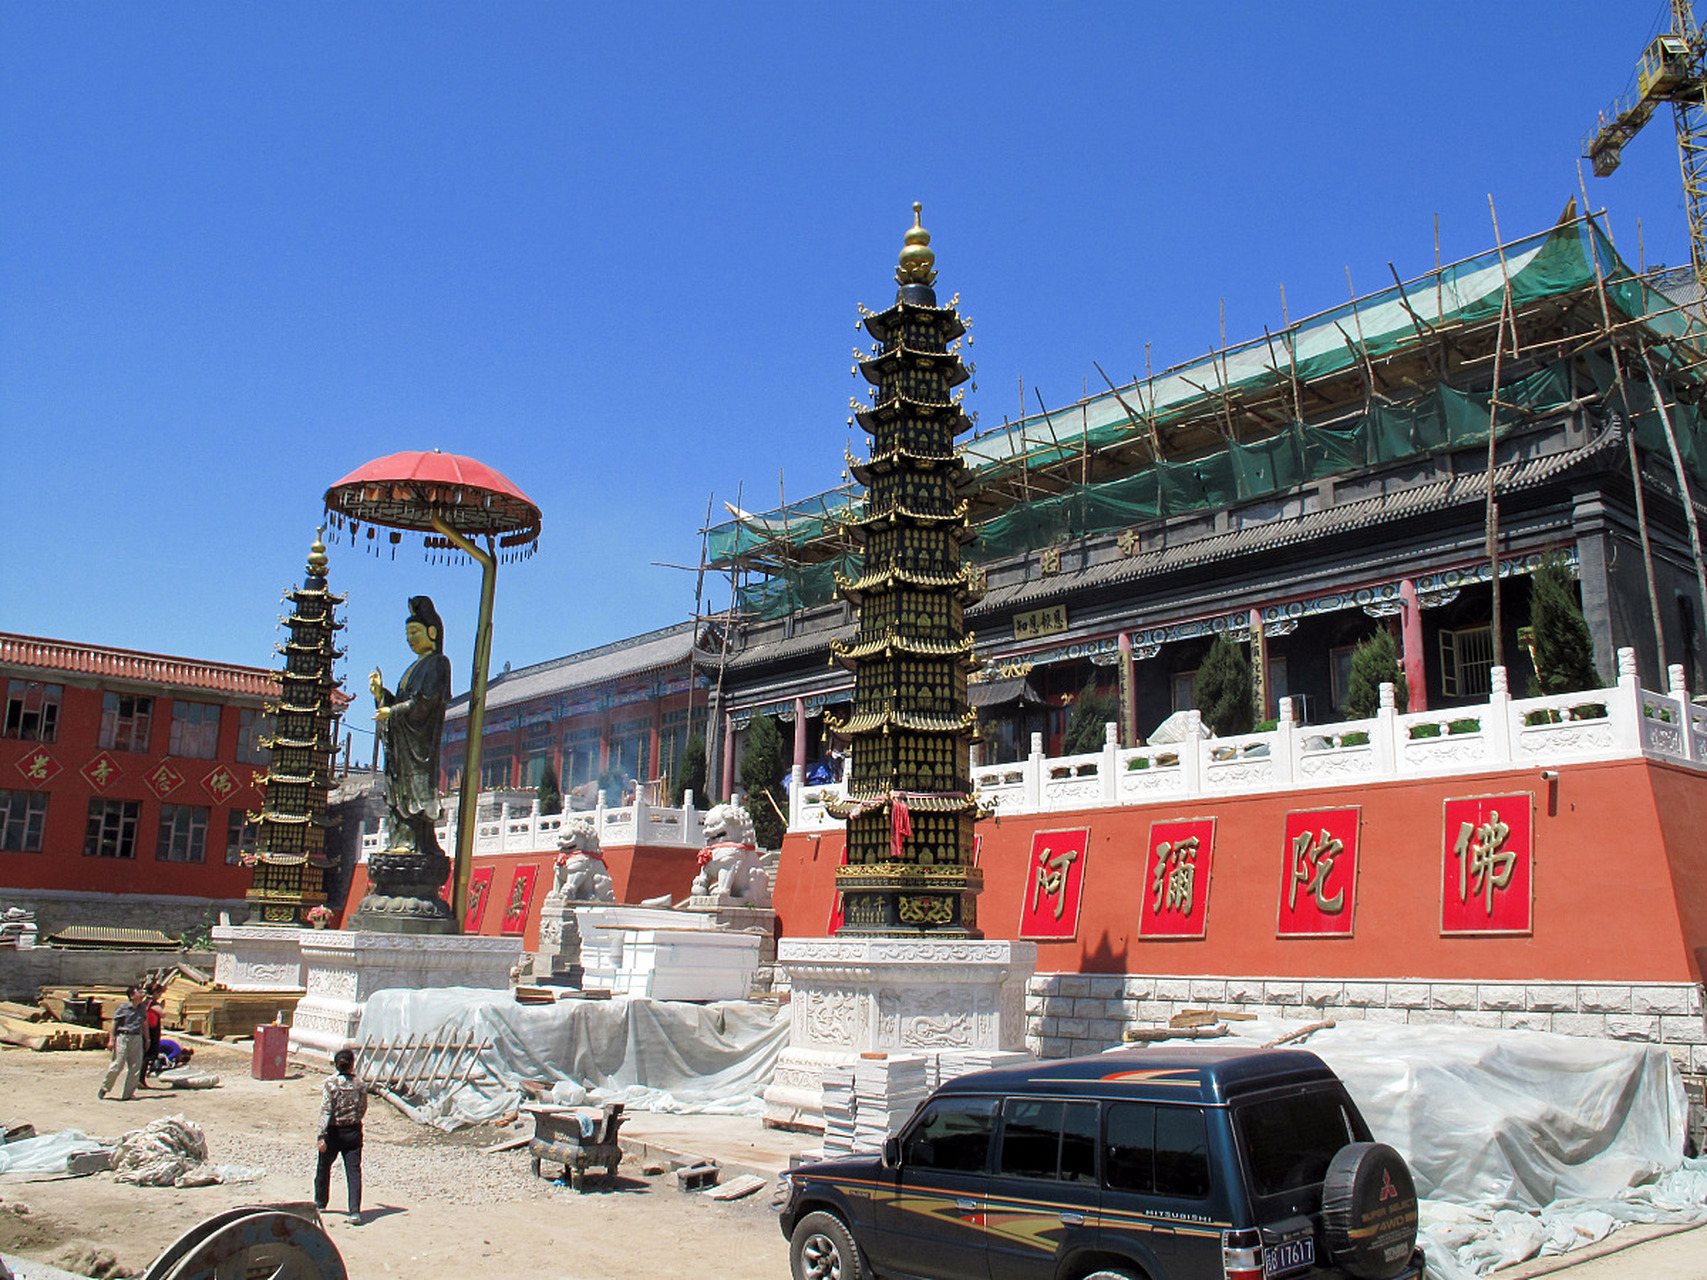 海藏寺位于中国西北甘肃省武威市,是河西走廊上的一颗璀璨明珠,充满了